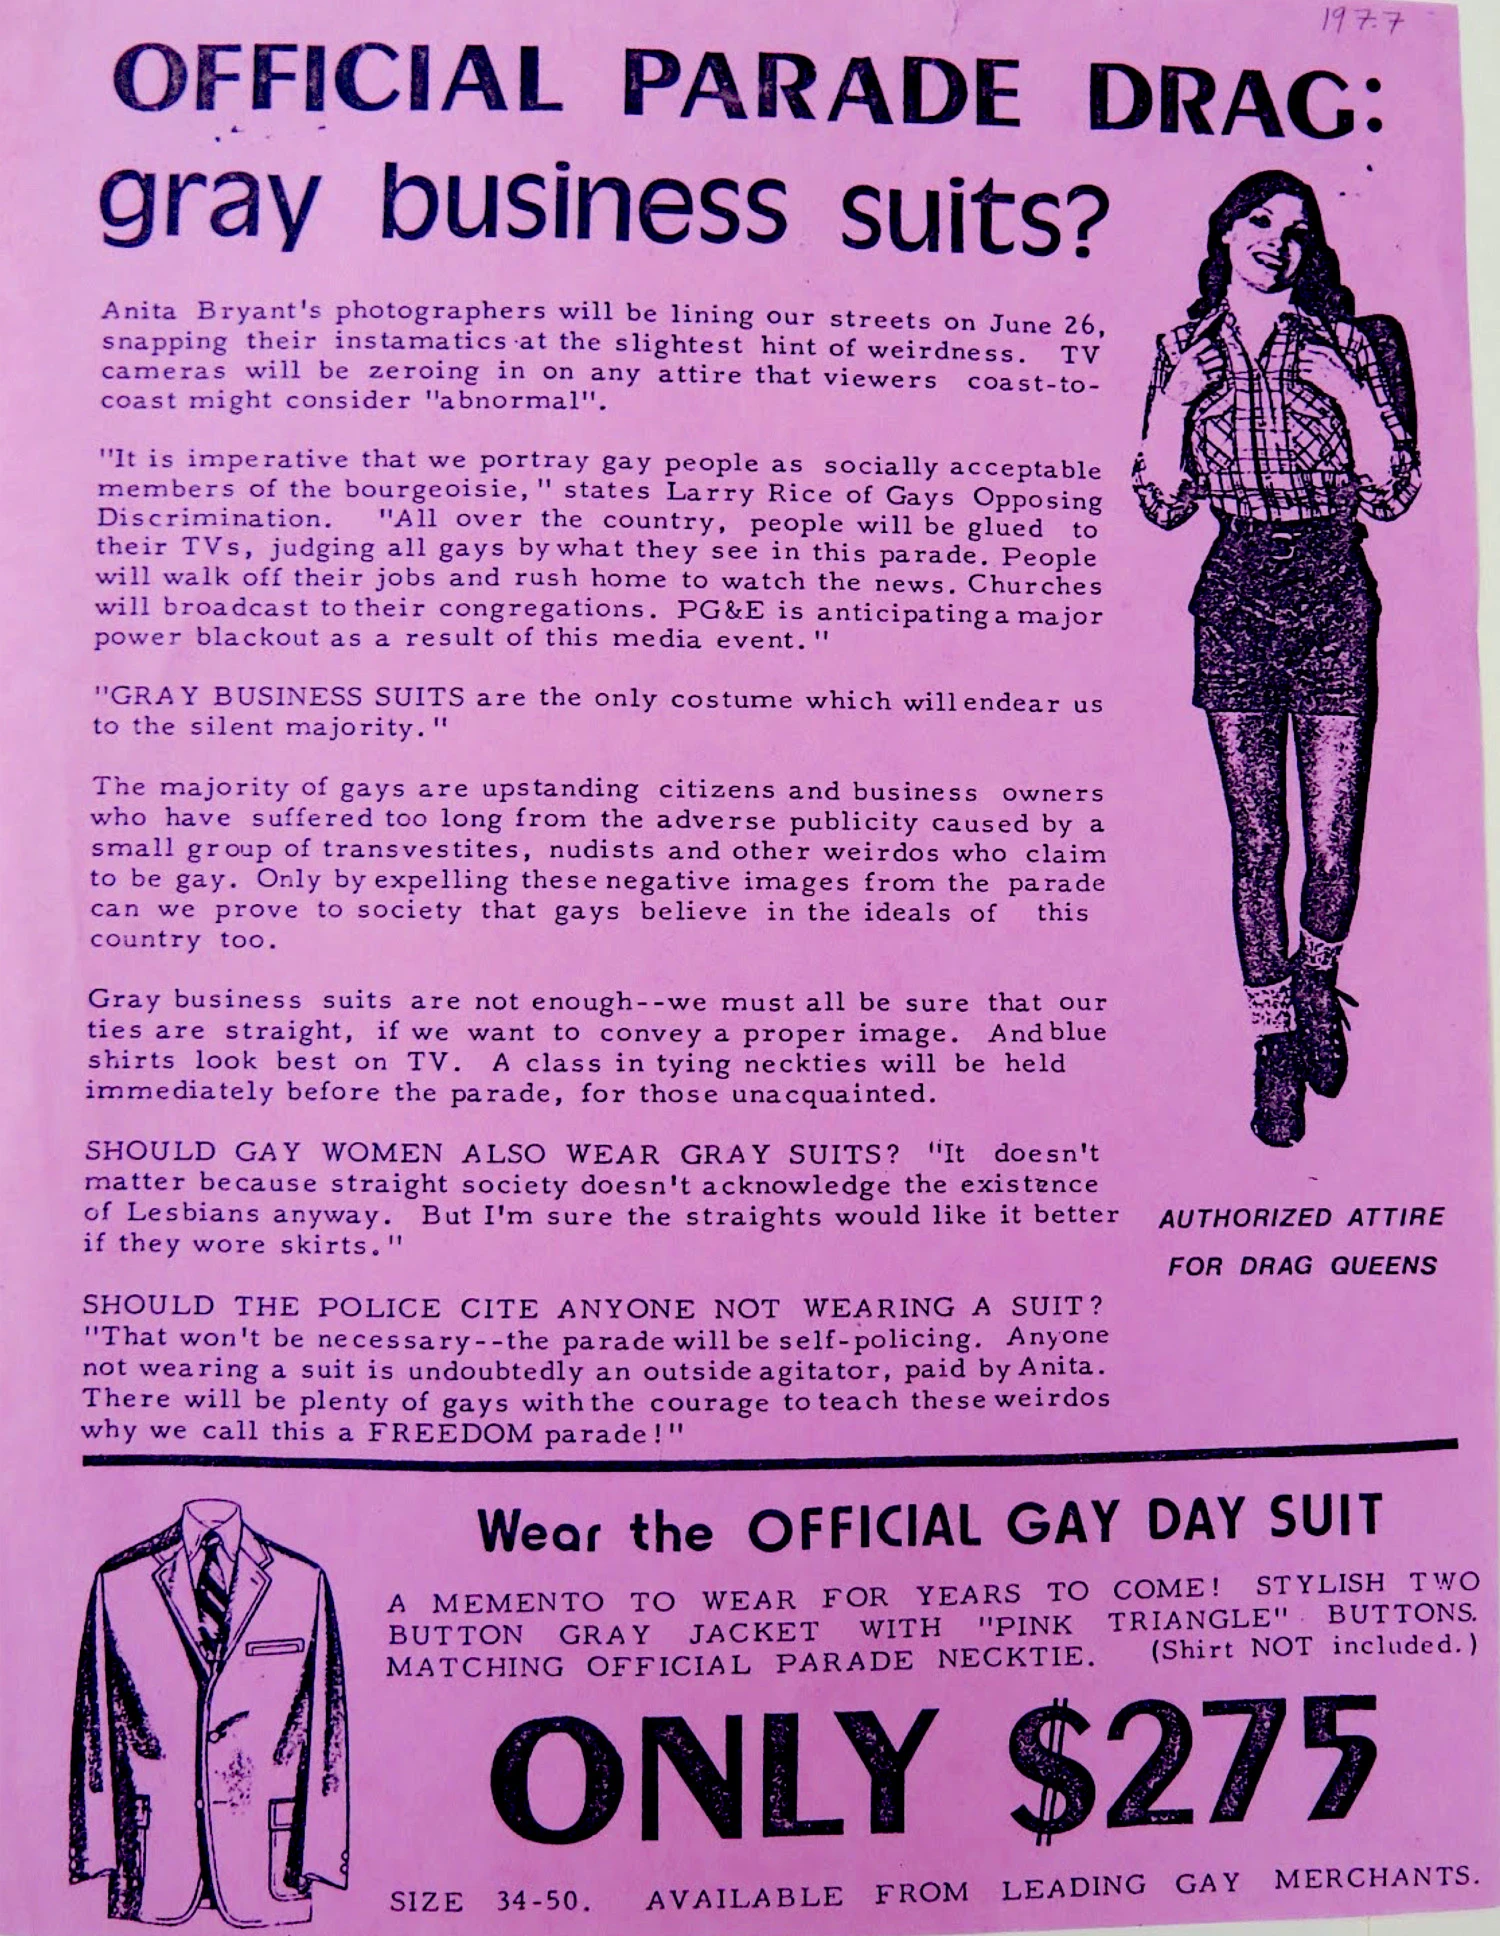 Lady Boss Kids Sweatshirt Female Power Business Women Long Sleeve 1973C